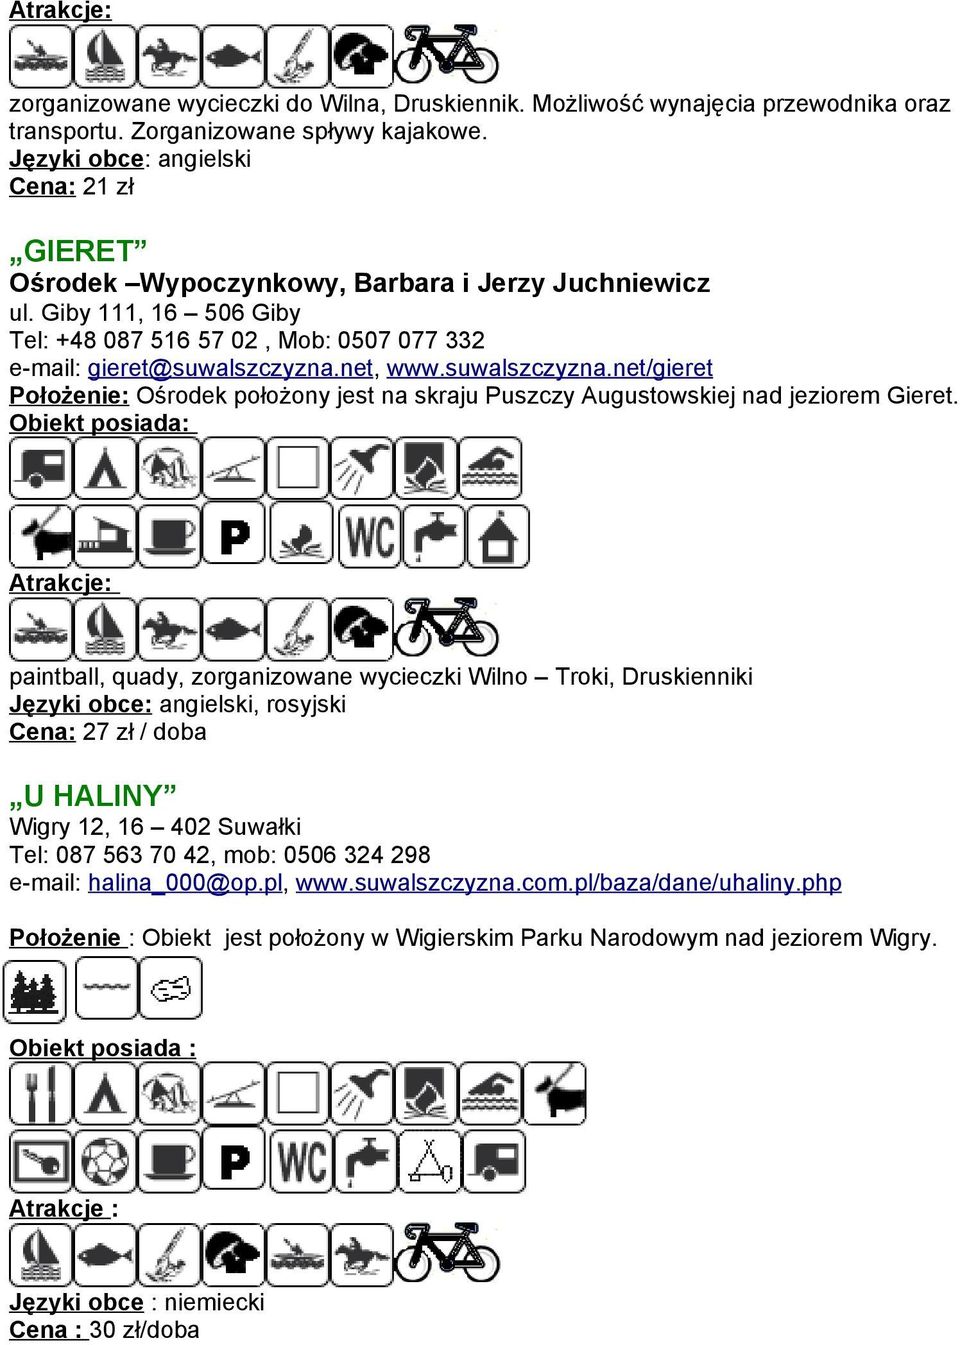 paintball, quady, zorganizowane wycieczki Wilno Troki, Druskienniki, rosyjski Cena: 27 zł / doba U HALINY Wigry 12, 16 402 Suwałki Tel: 087 563 70 42, mob: 0506 324 298 e-mail: halina_000@op.pl, www.